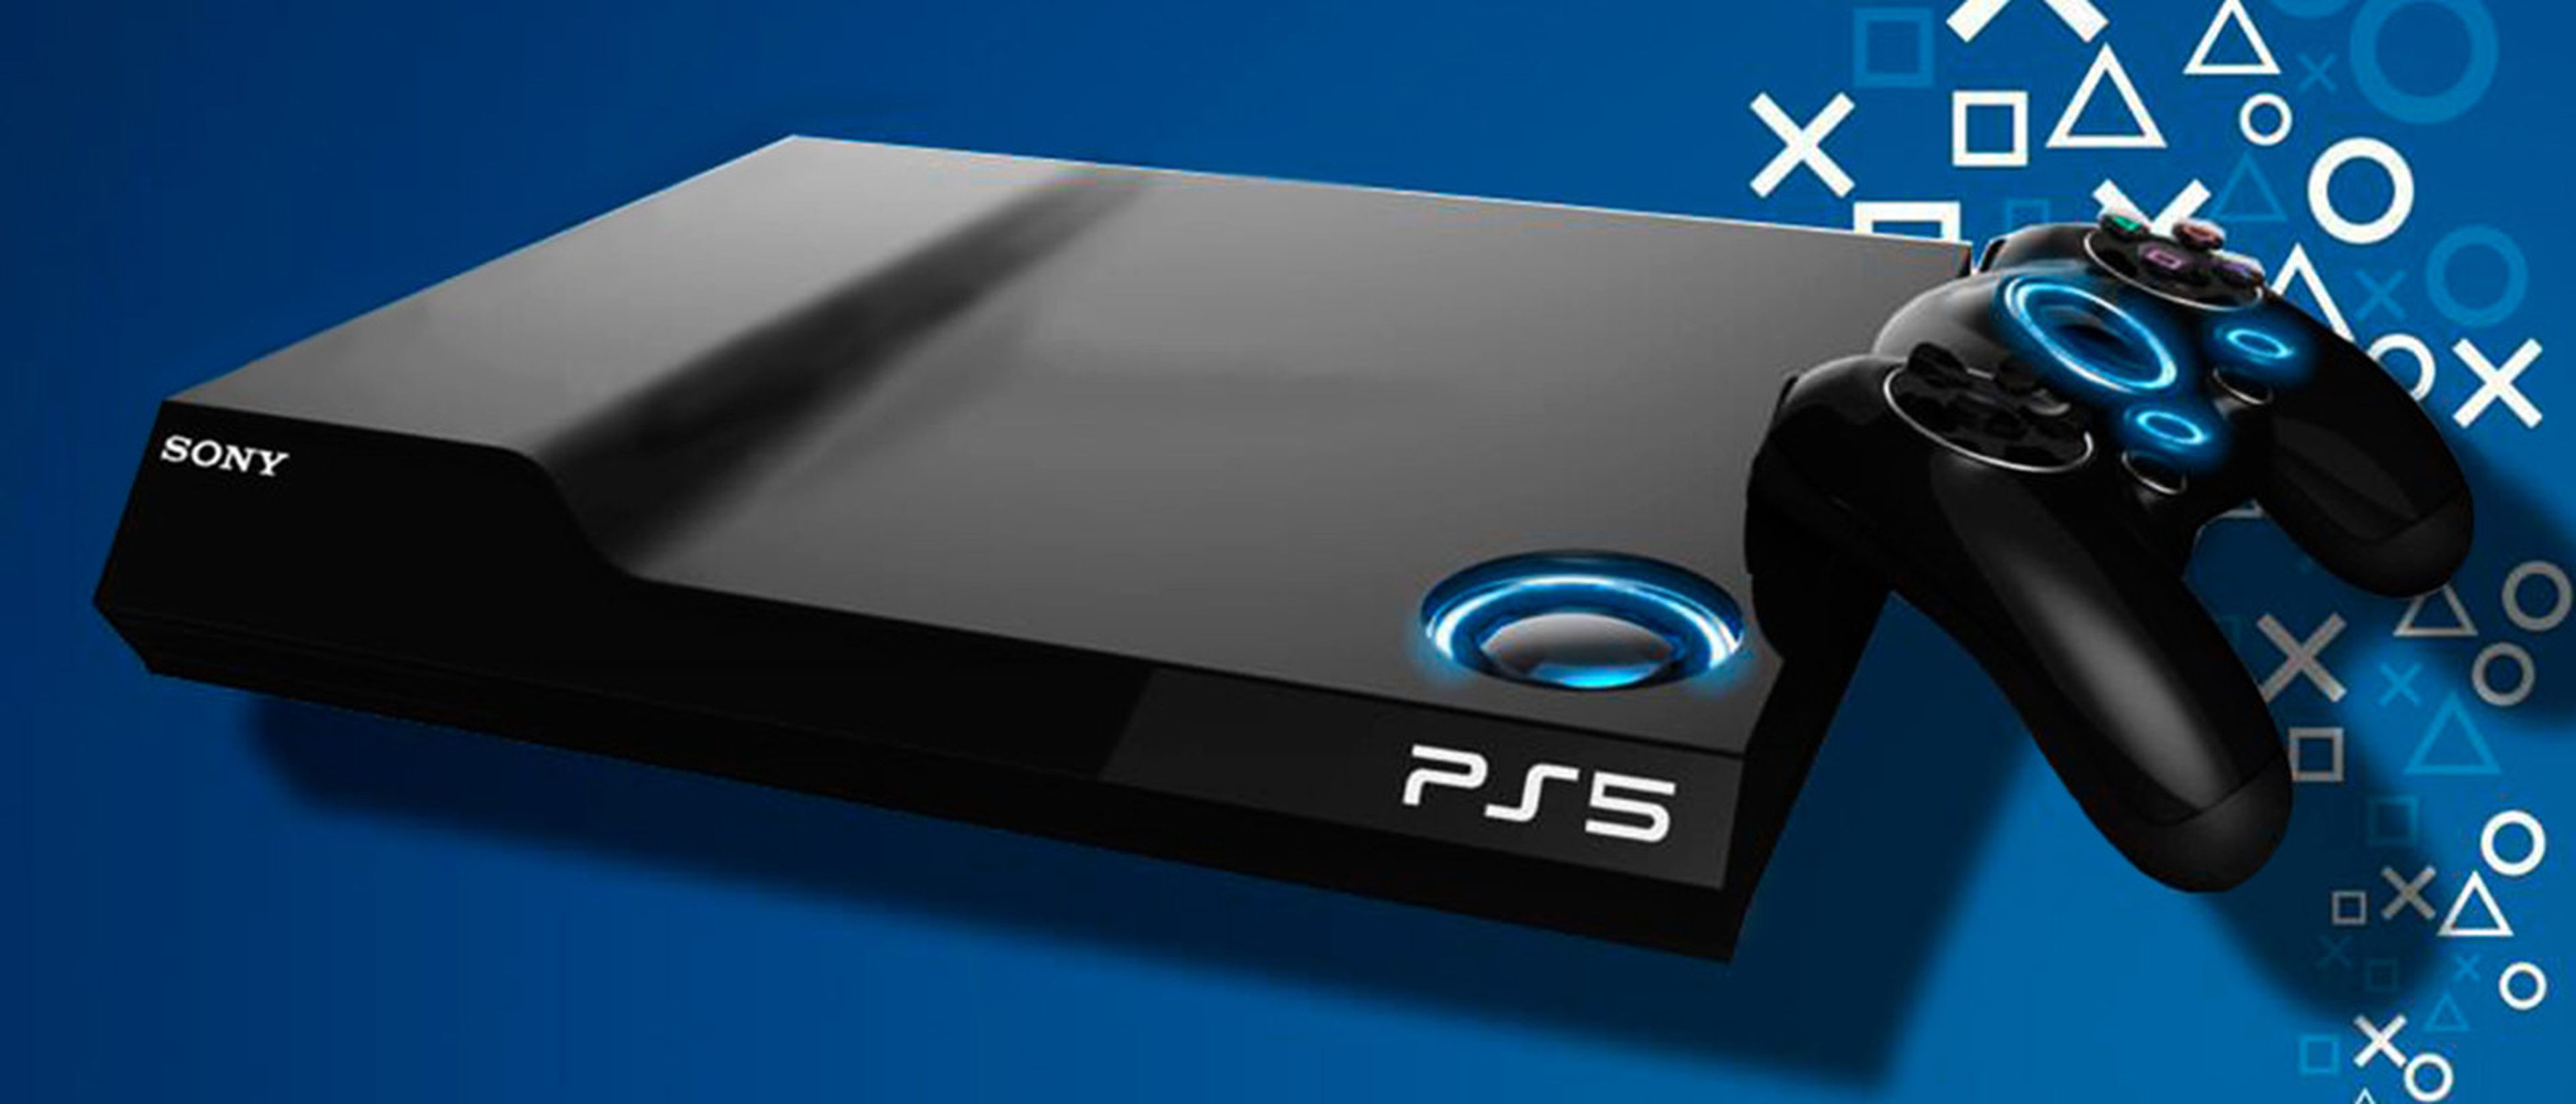 PS5 tendrá más juegos exclusivos que cualquier otra consola de PlayStation